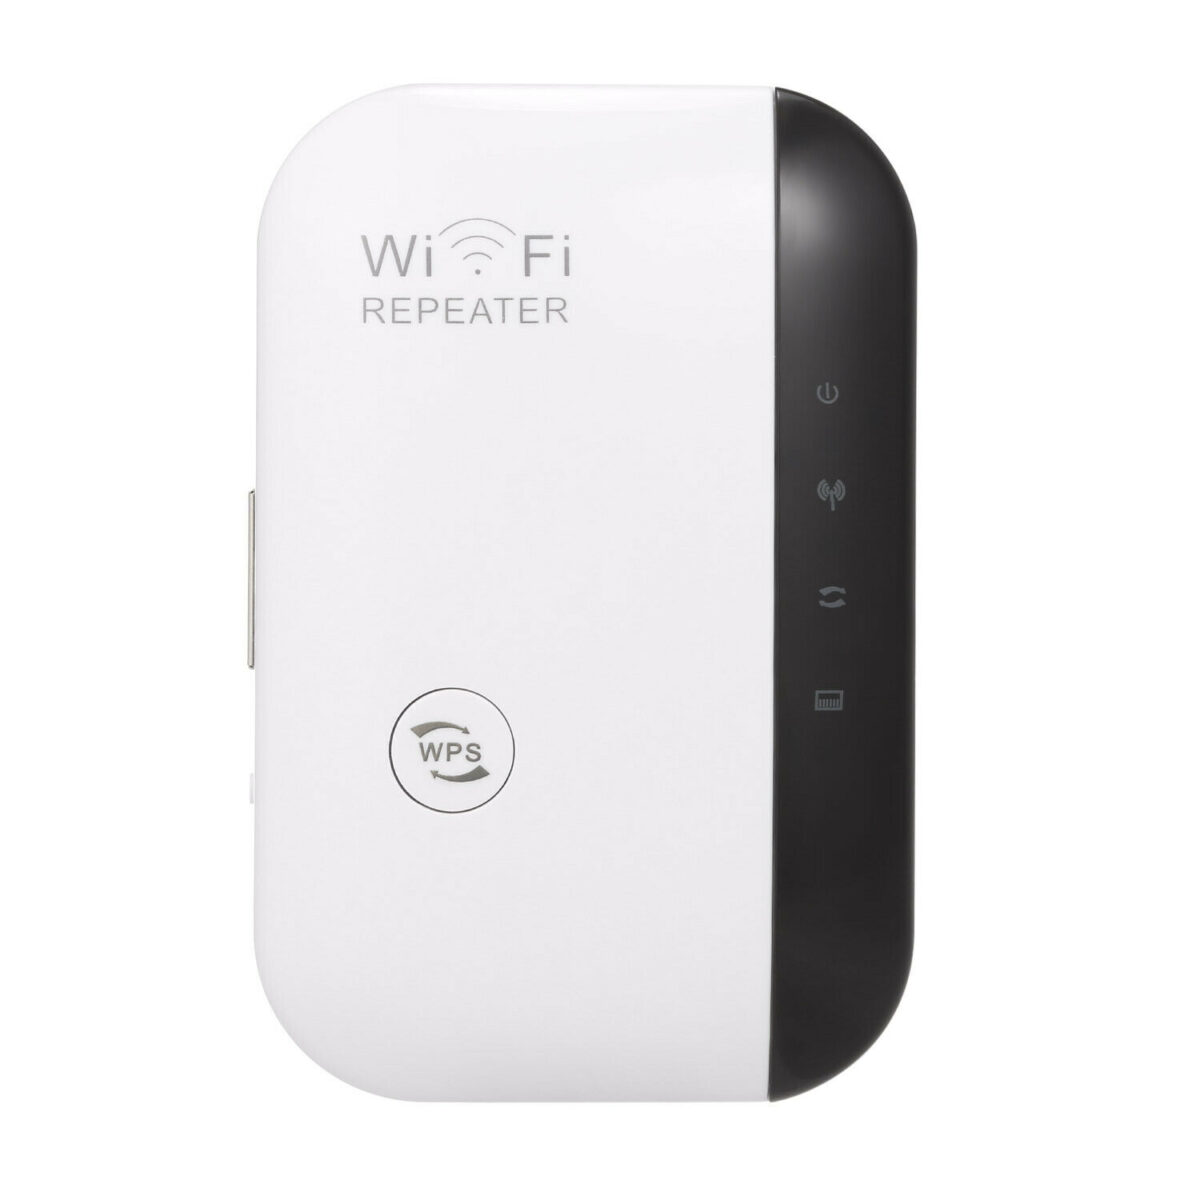 Ripetitore access point Wi-Fi: solo 12 euro per estendere il segnale internet in casa